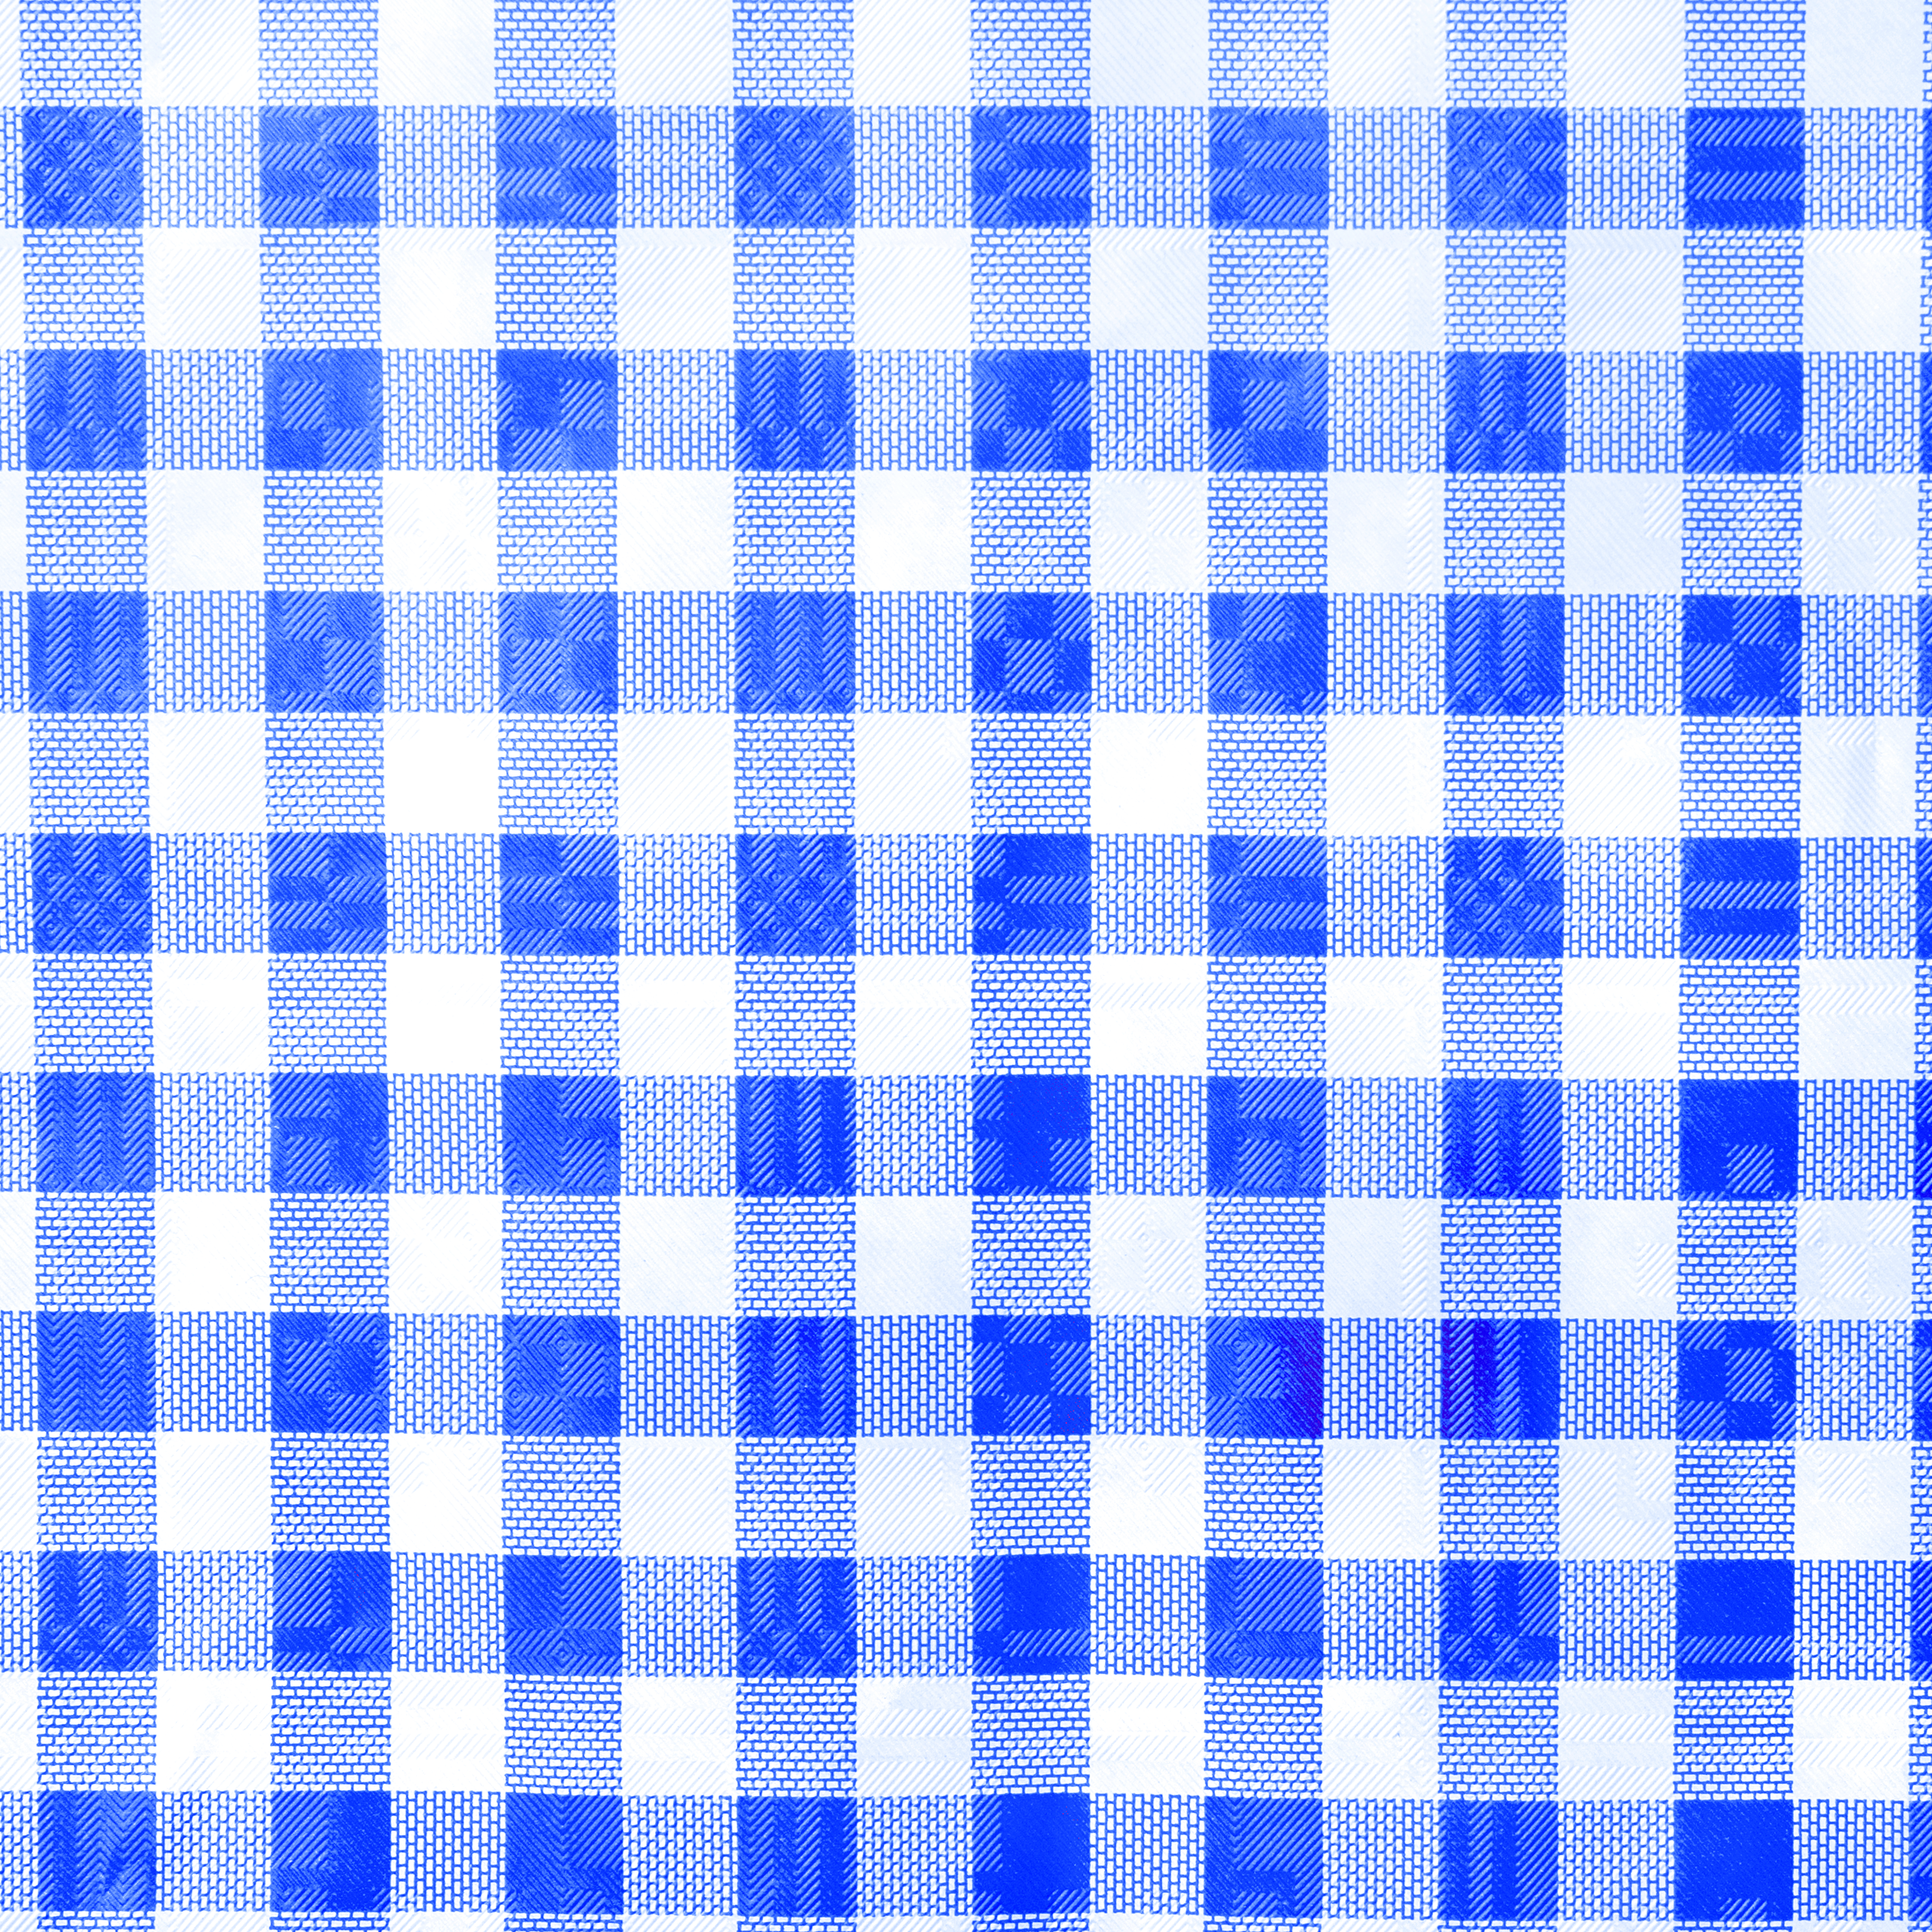 Tischtuchpapier karo blau/weiß, 1 x 50 m